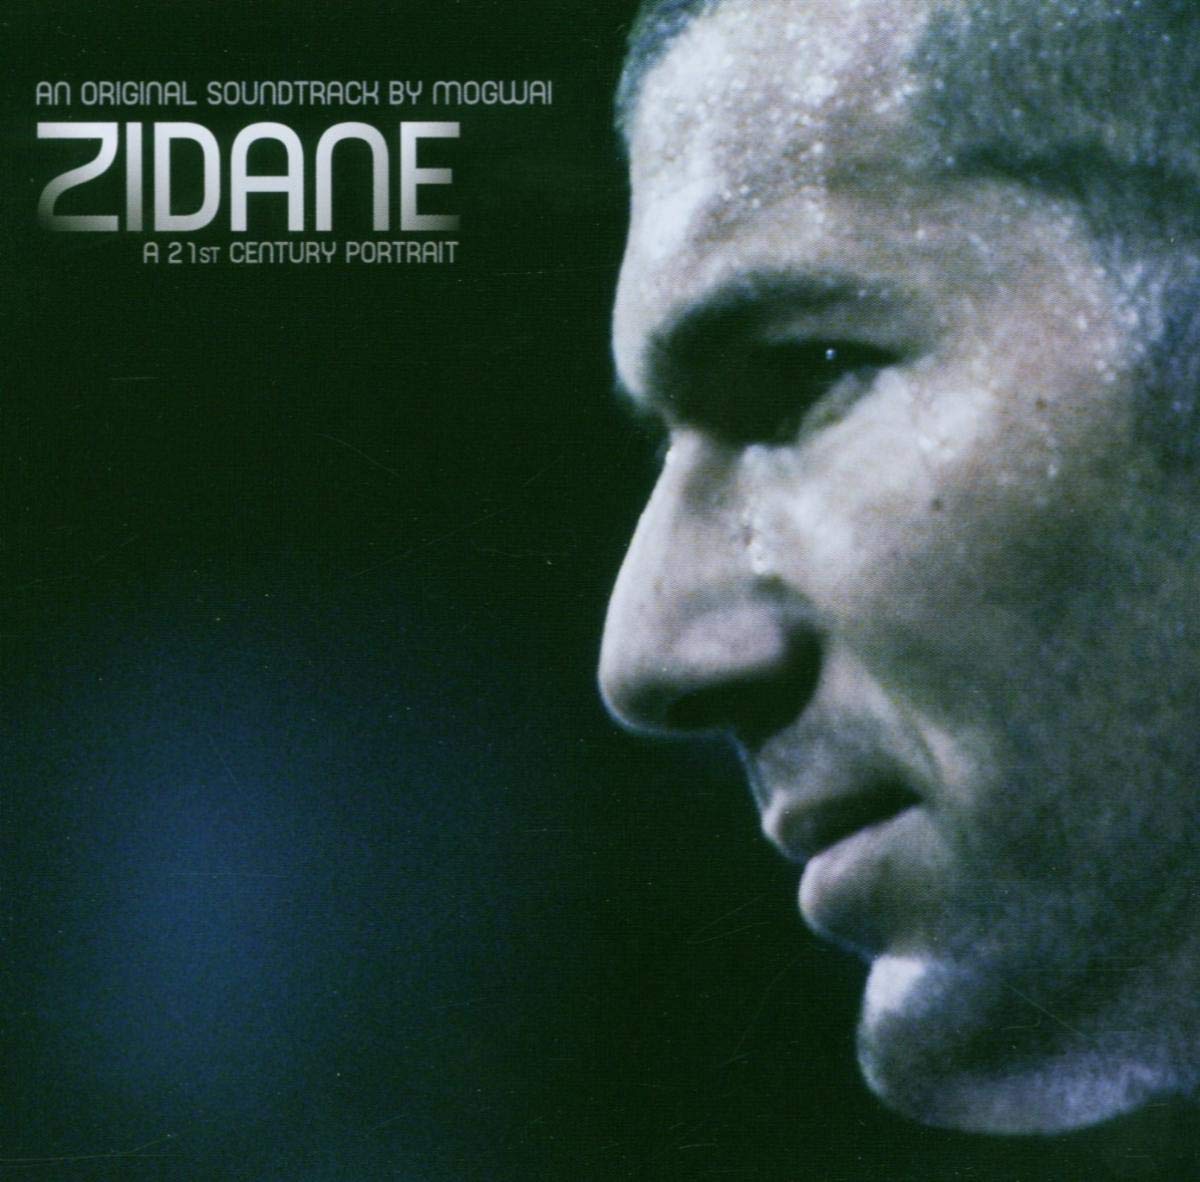 Mogwai "Zidane: A 21st Century Portrait" 2LP